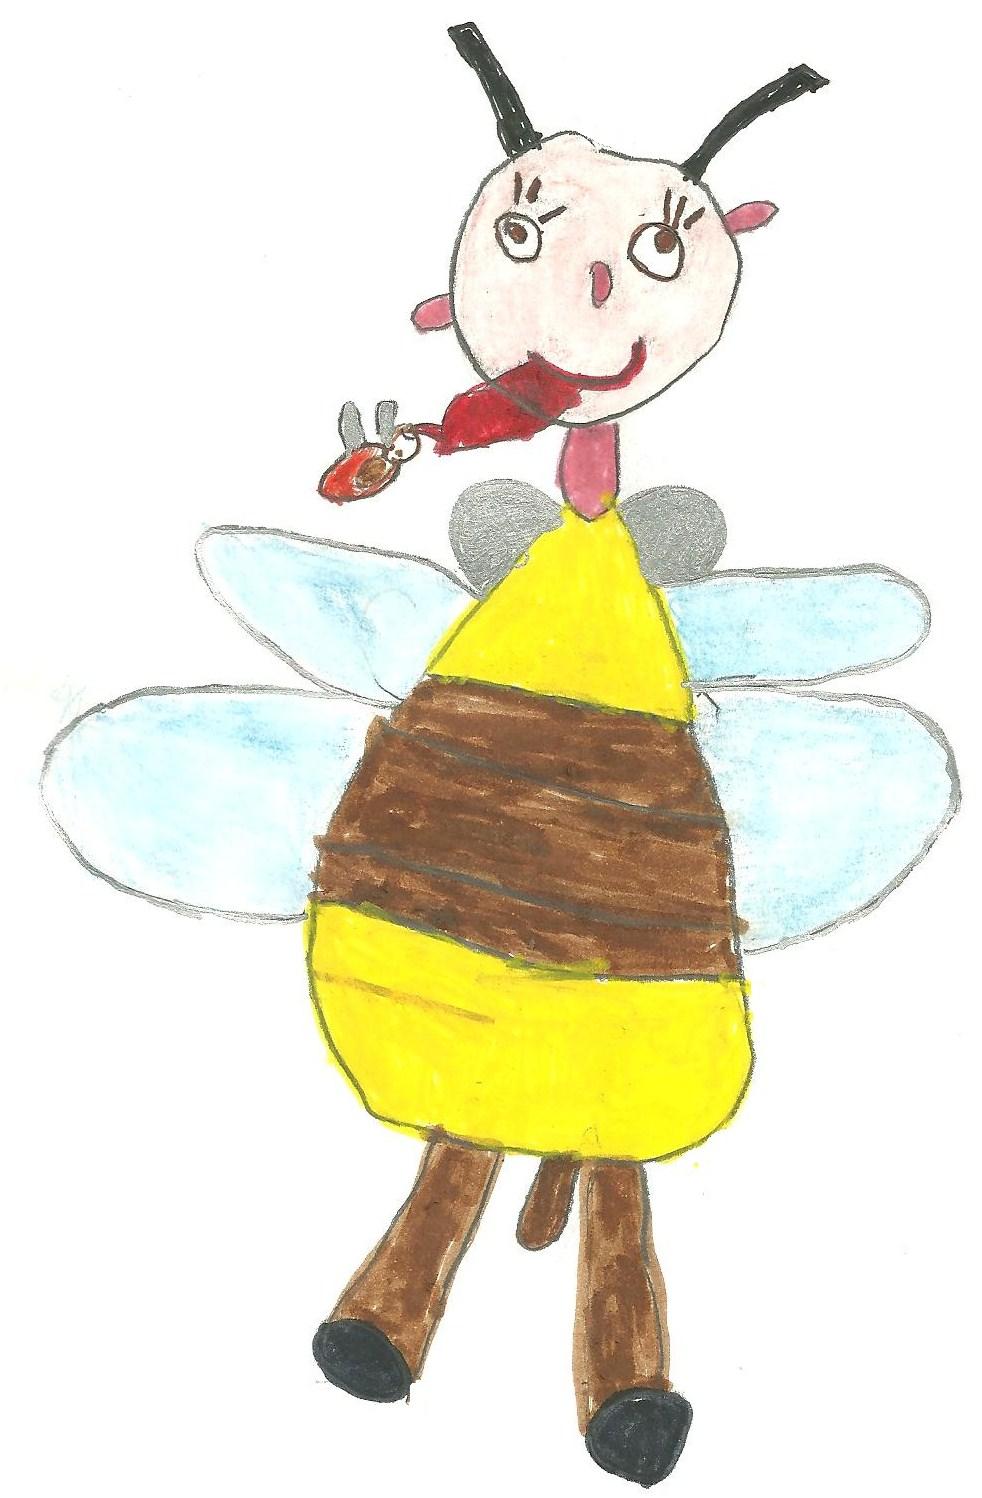 Ape nutrice Come l ape nutrice siamo attenti, delicati, sorridenti e preoccupati i bambini È l ape nutrice da la pappa reale alle larve è dolce e si prende cura delle api piccoline Erika A me è